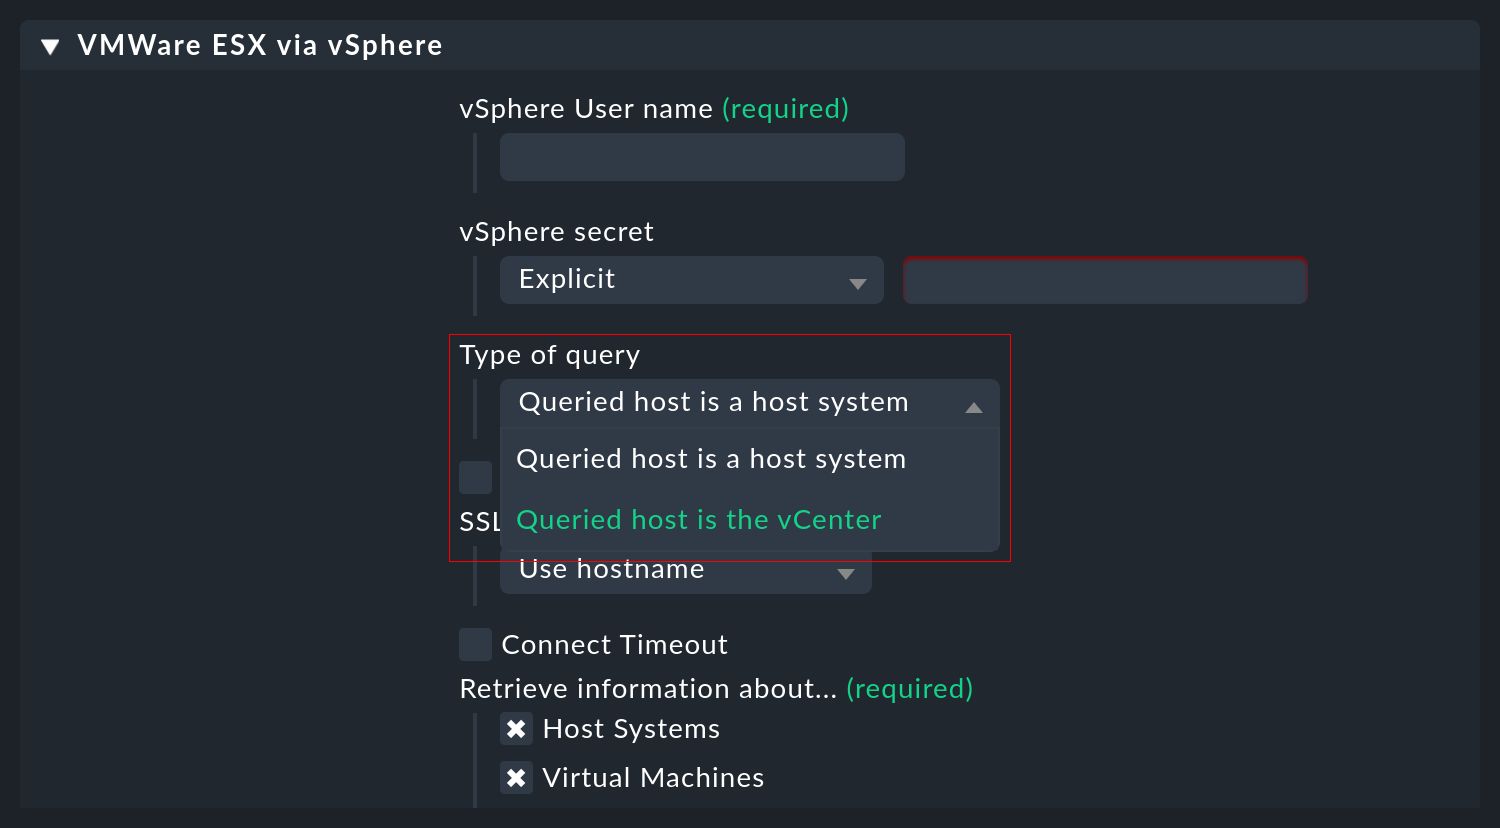 Auswahlmöglichkeiten 'host system' vs. 'vCenter' in der VMware ESXi Konfiguration.